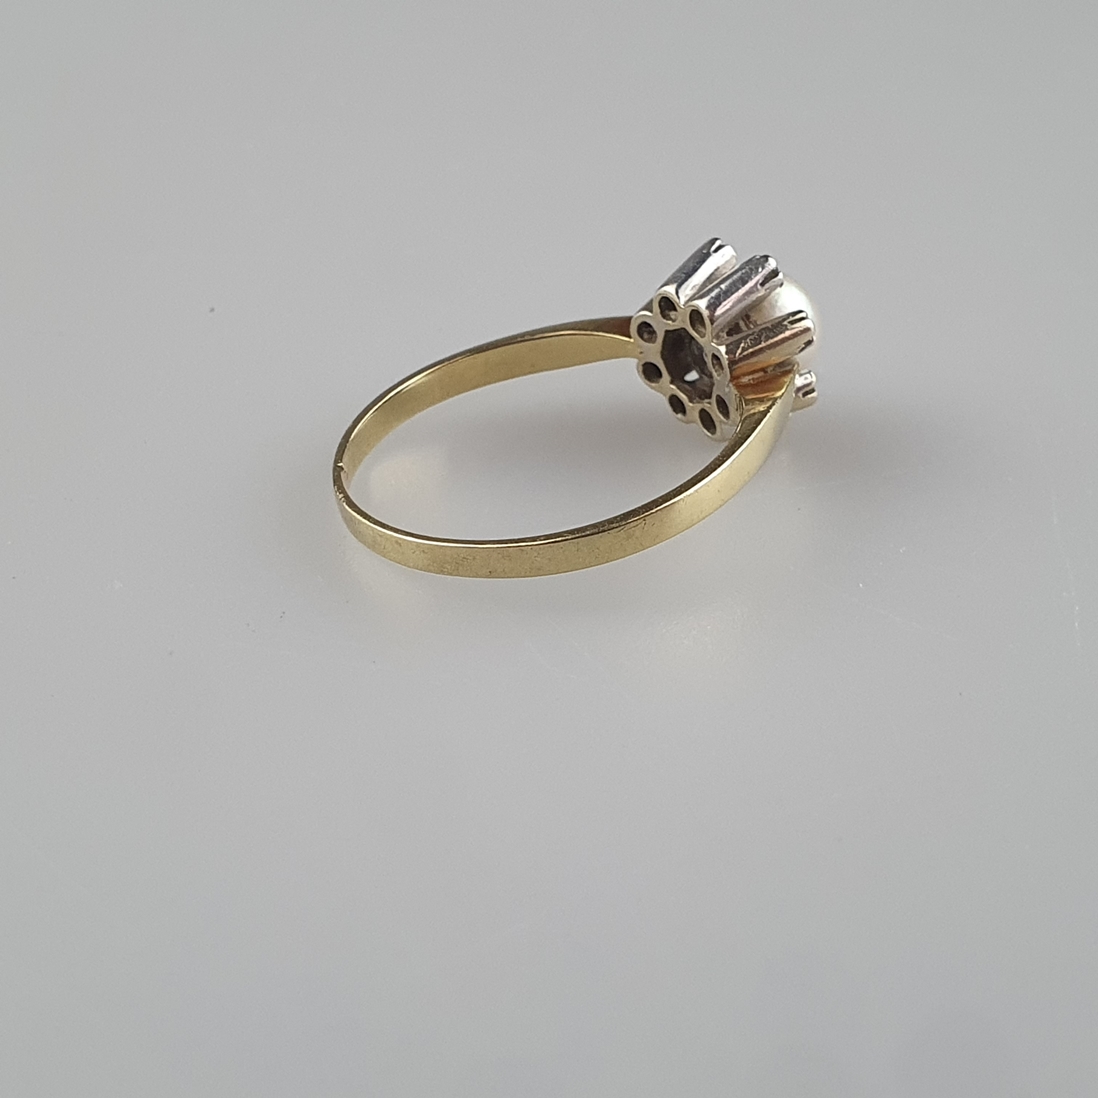 Perlring mit Diamantbesatz - Gelbgold 585/000 (14K), gestempelt, zentrale Perle von 6mm-Dm. mit sch - Image 4 of 6